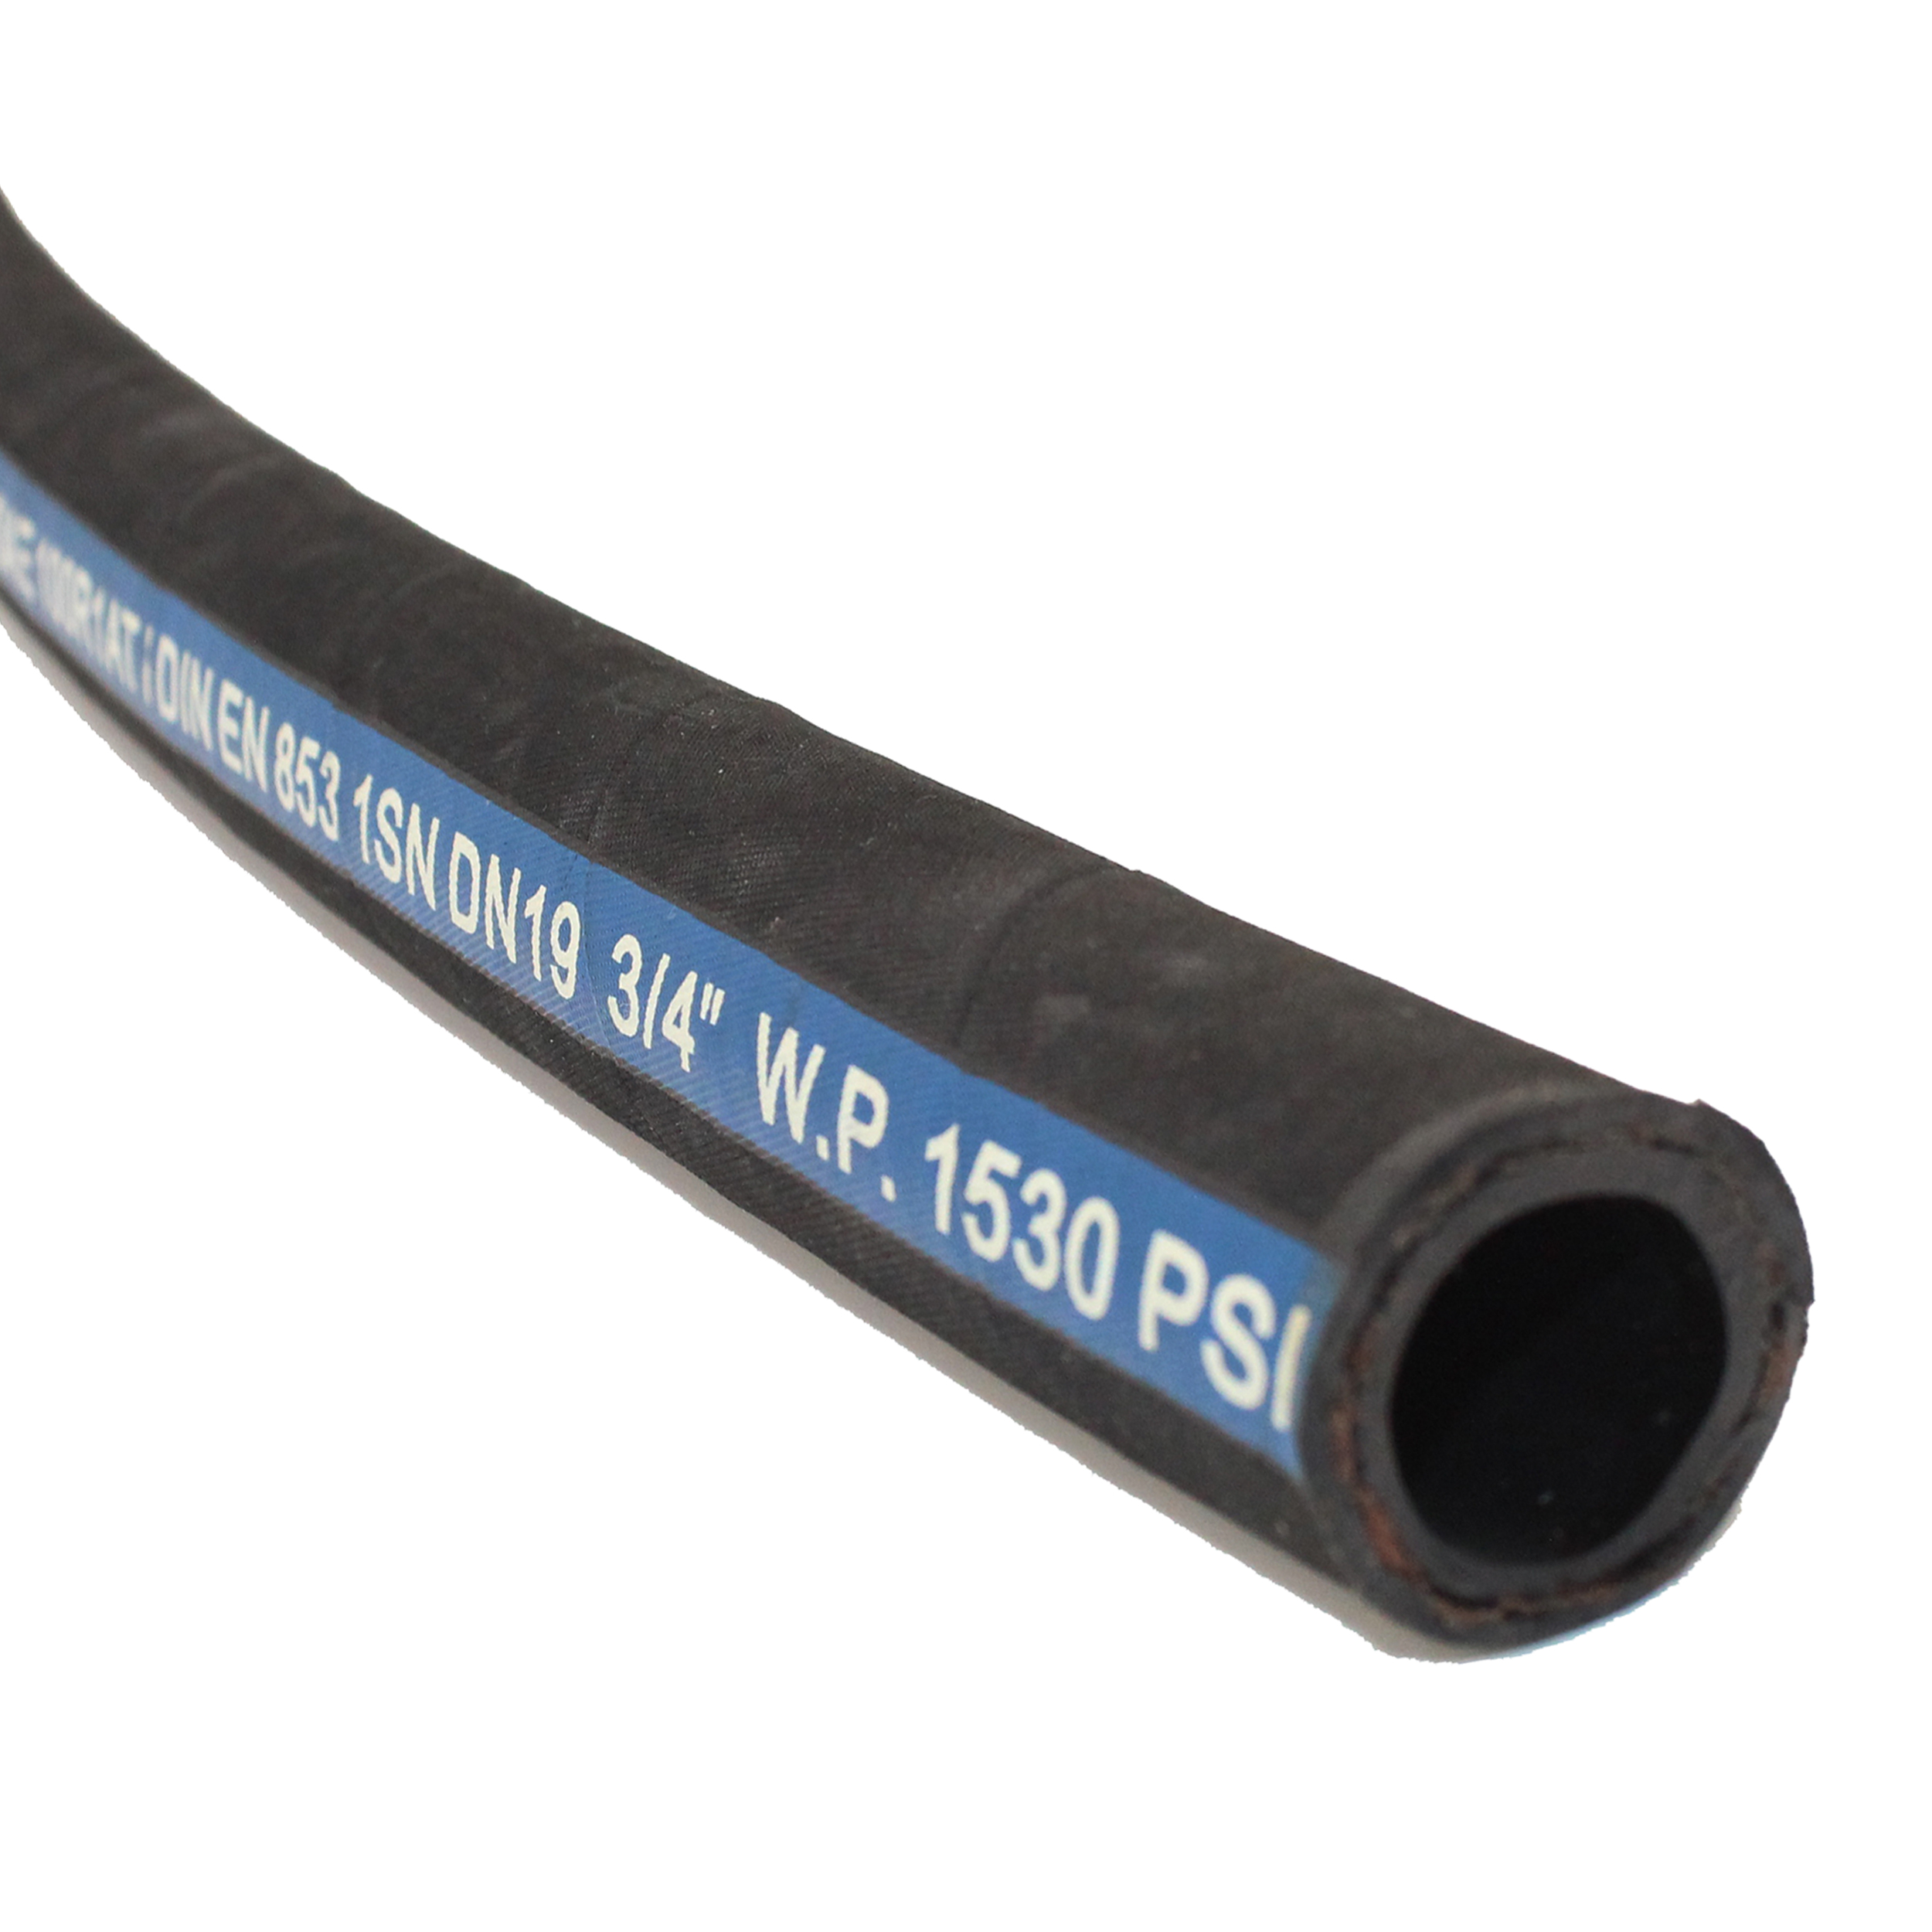 sae100r1-steel-reinforced-hydraulic-hose